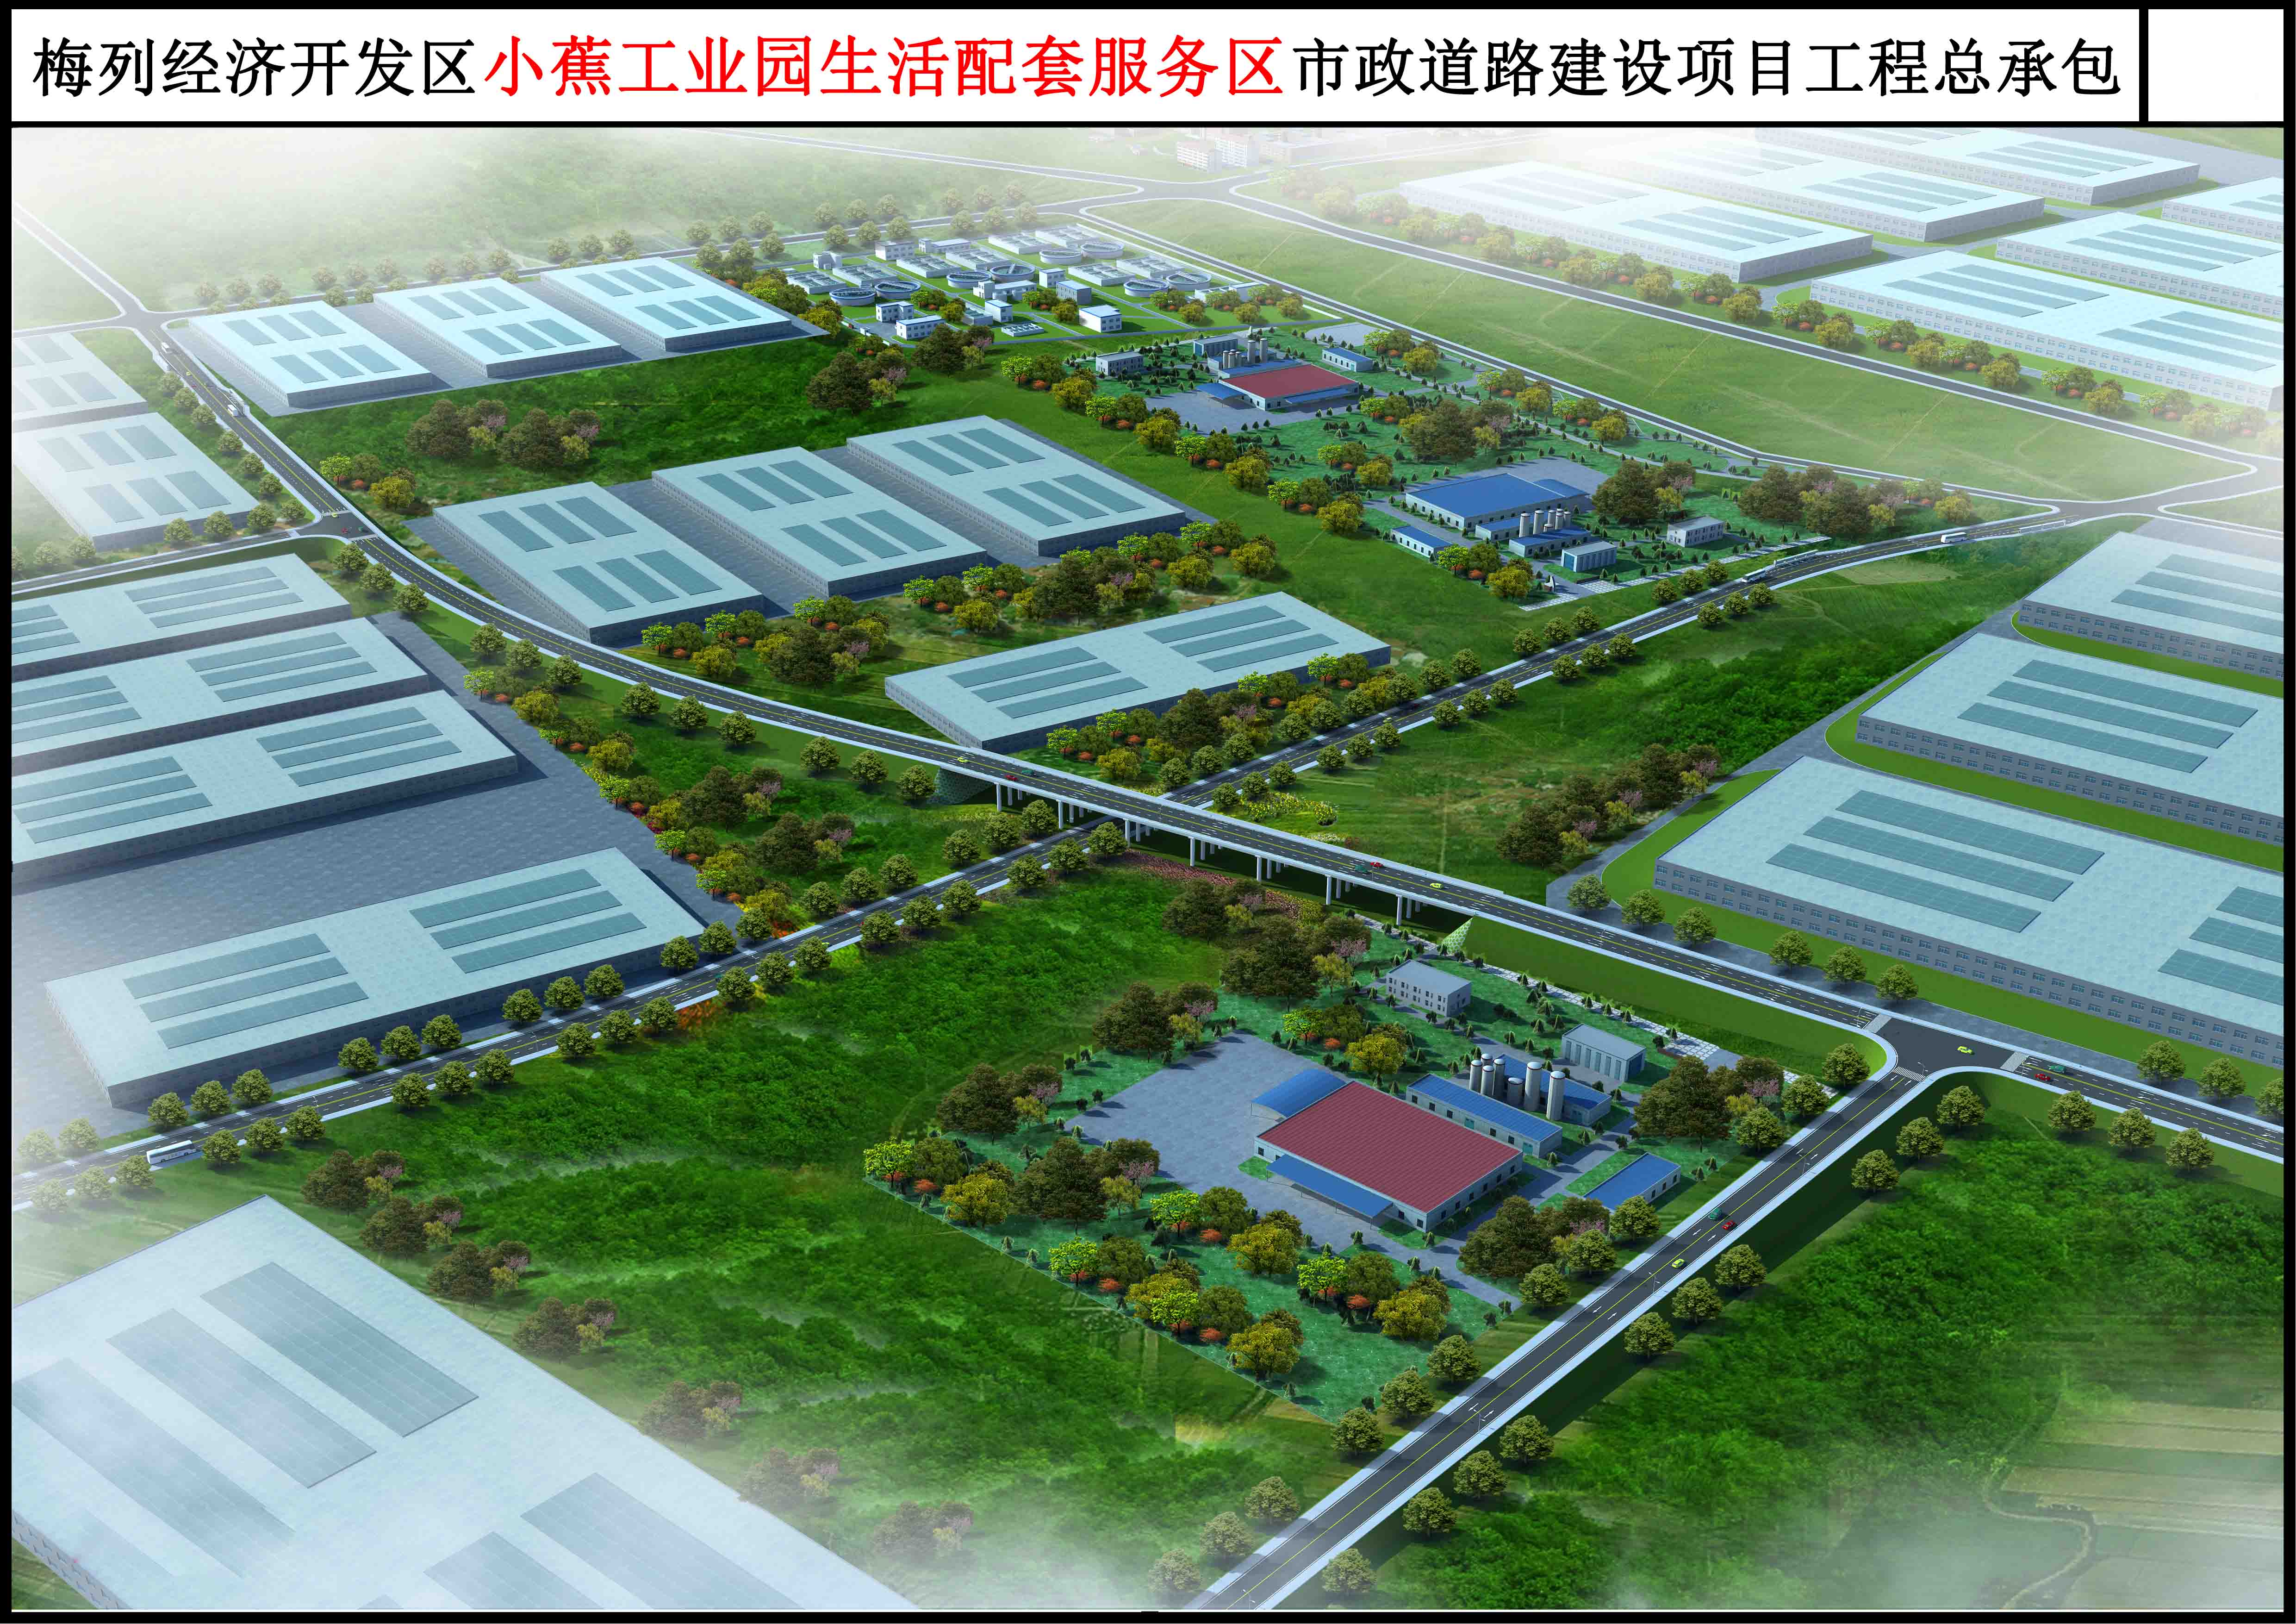 梅列小蕉工业园生活配套服务区市政道路建设项目鸟瞰图.jpg